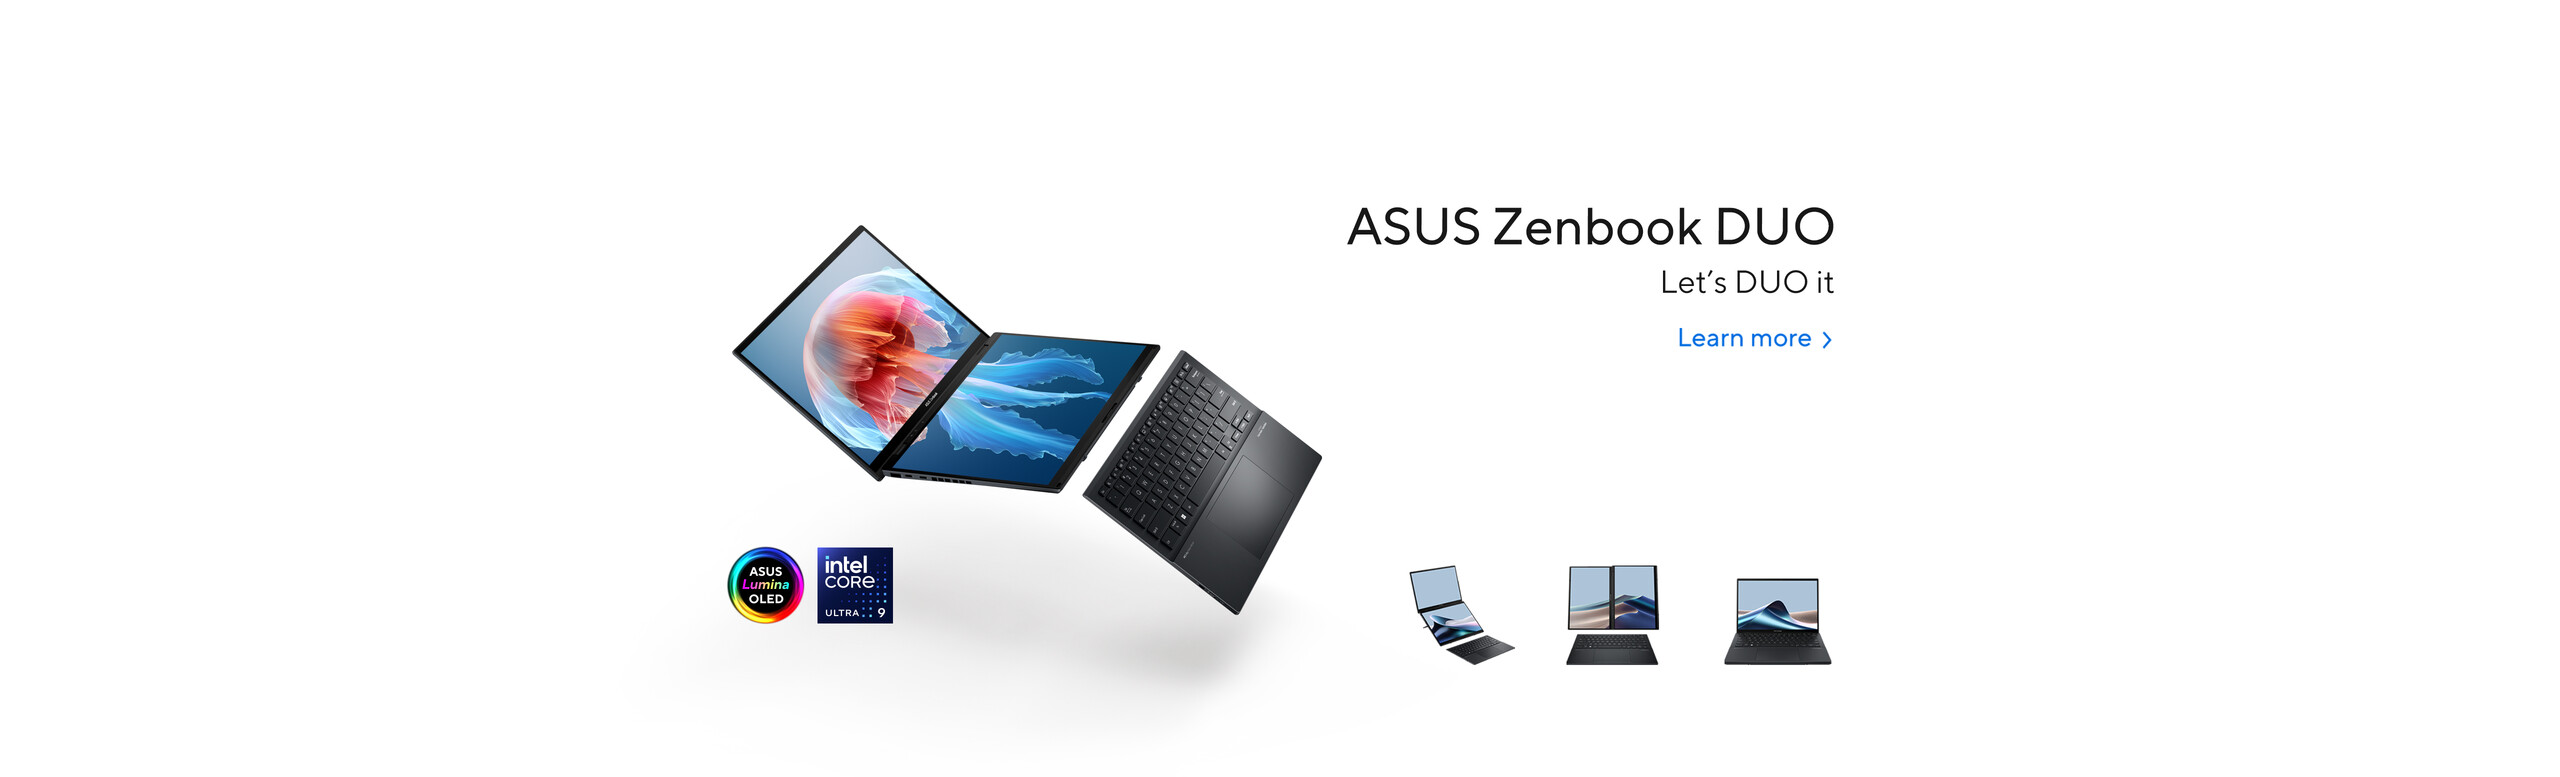 ASUS Zenbook DUO (2024) UX8406